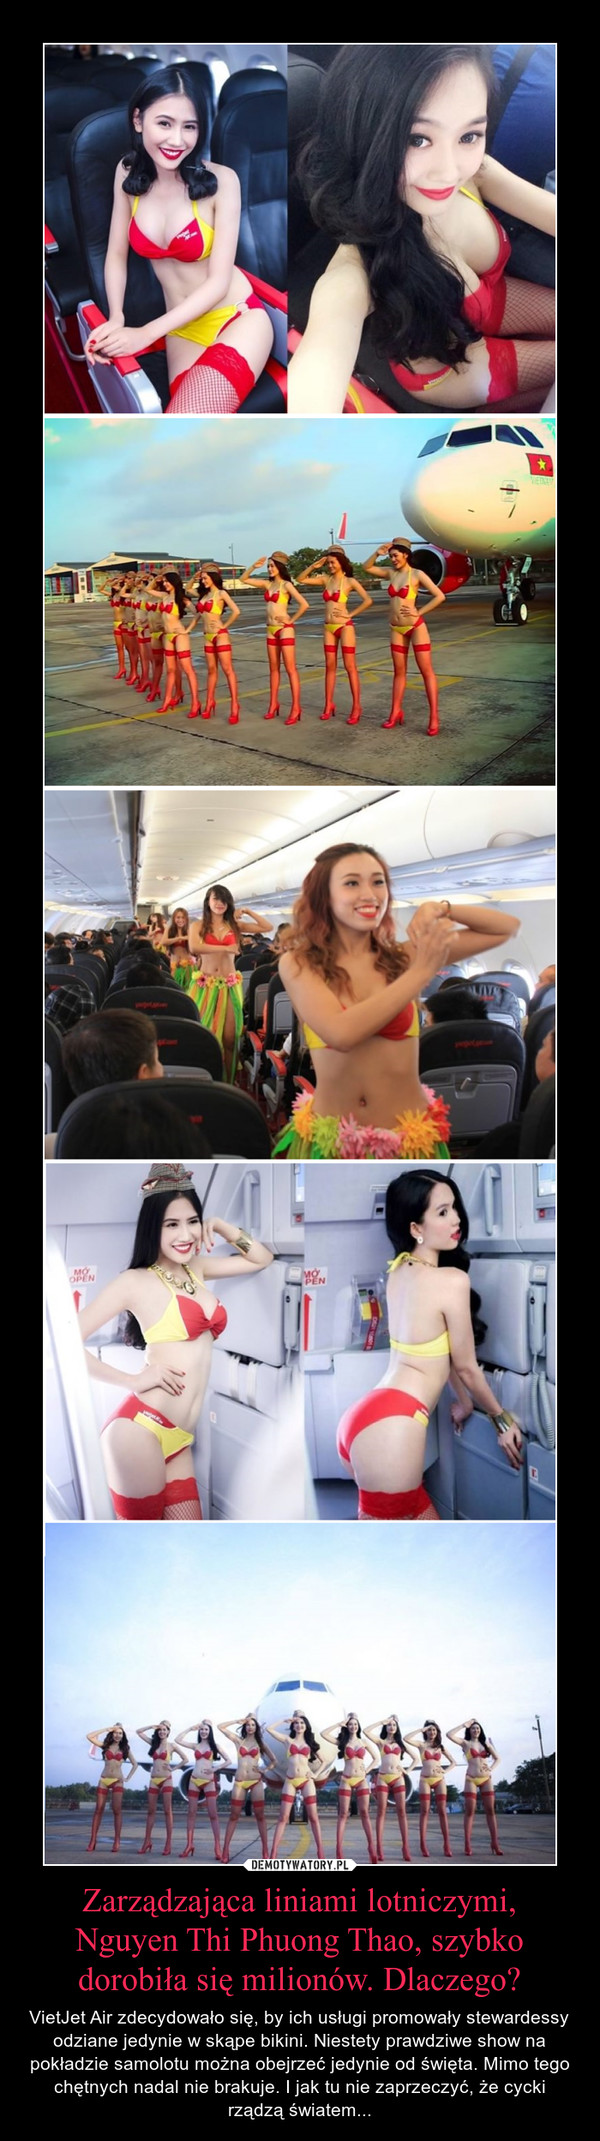 Zarządzająca liniami lotniczymi, Nguyen Thi Phuong Thao, szybko dorobiła się milionów. Dlaczego?